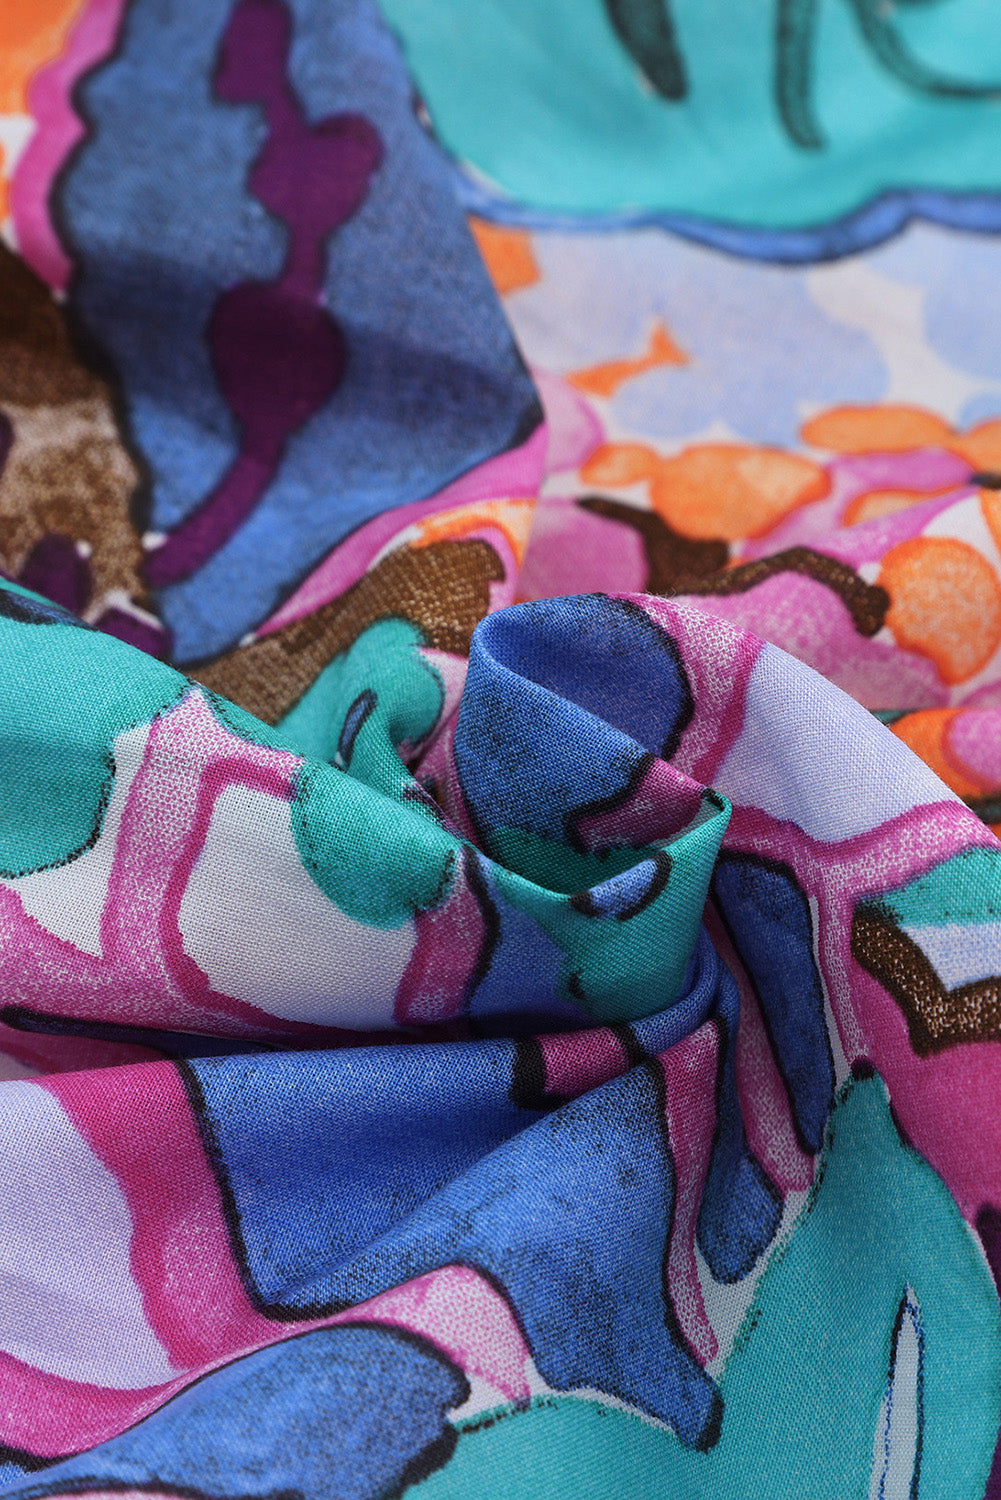 Mini-robe multicolore à imprimé floral, col en V, manches bouffantes